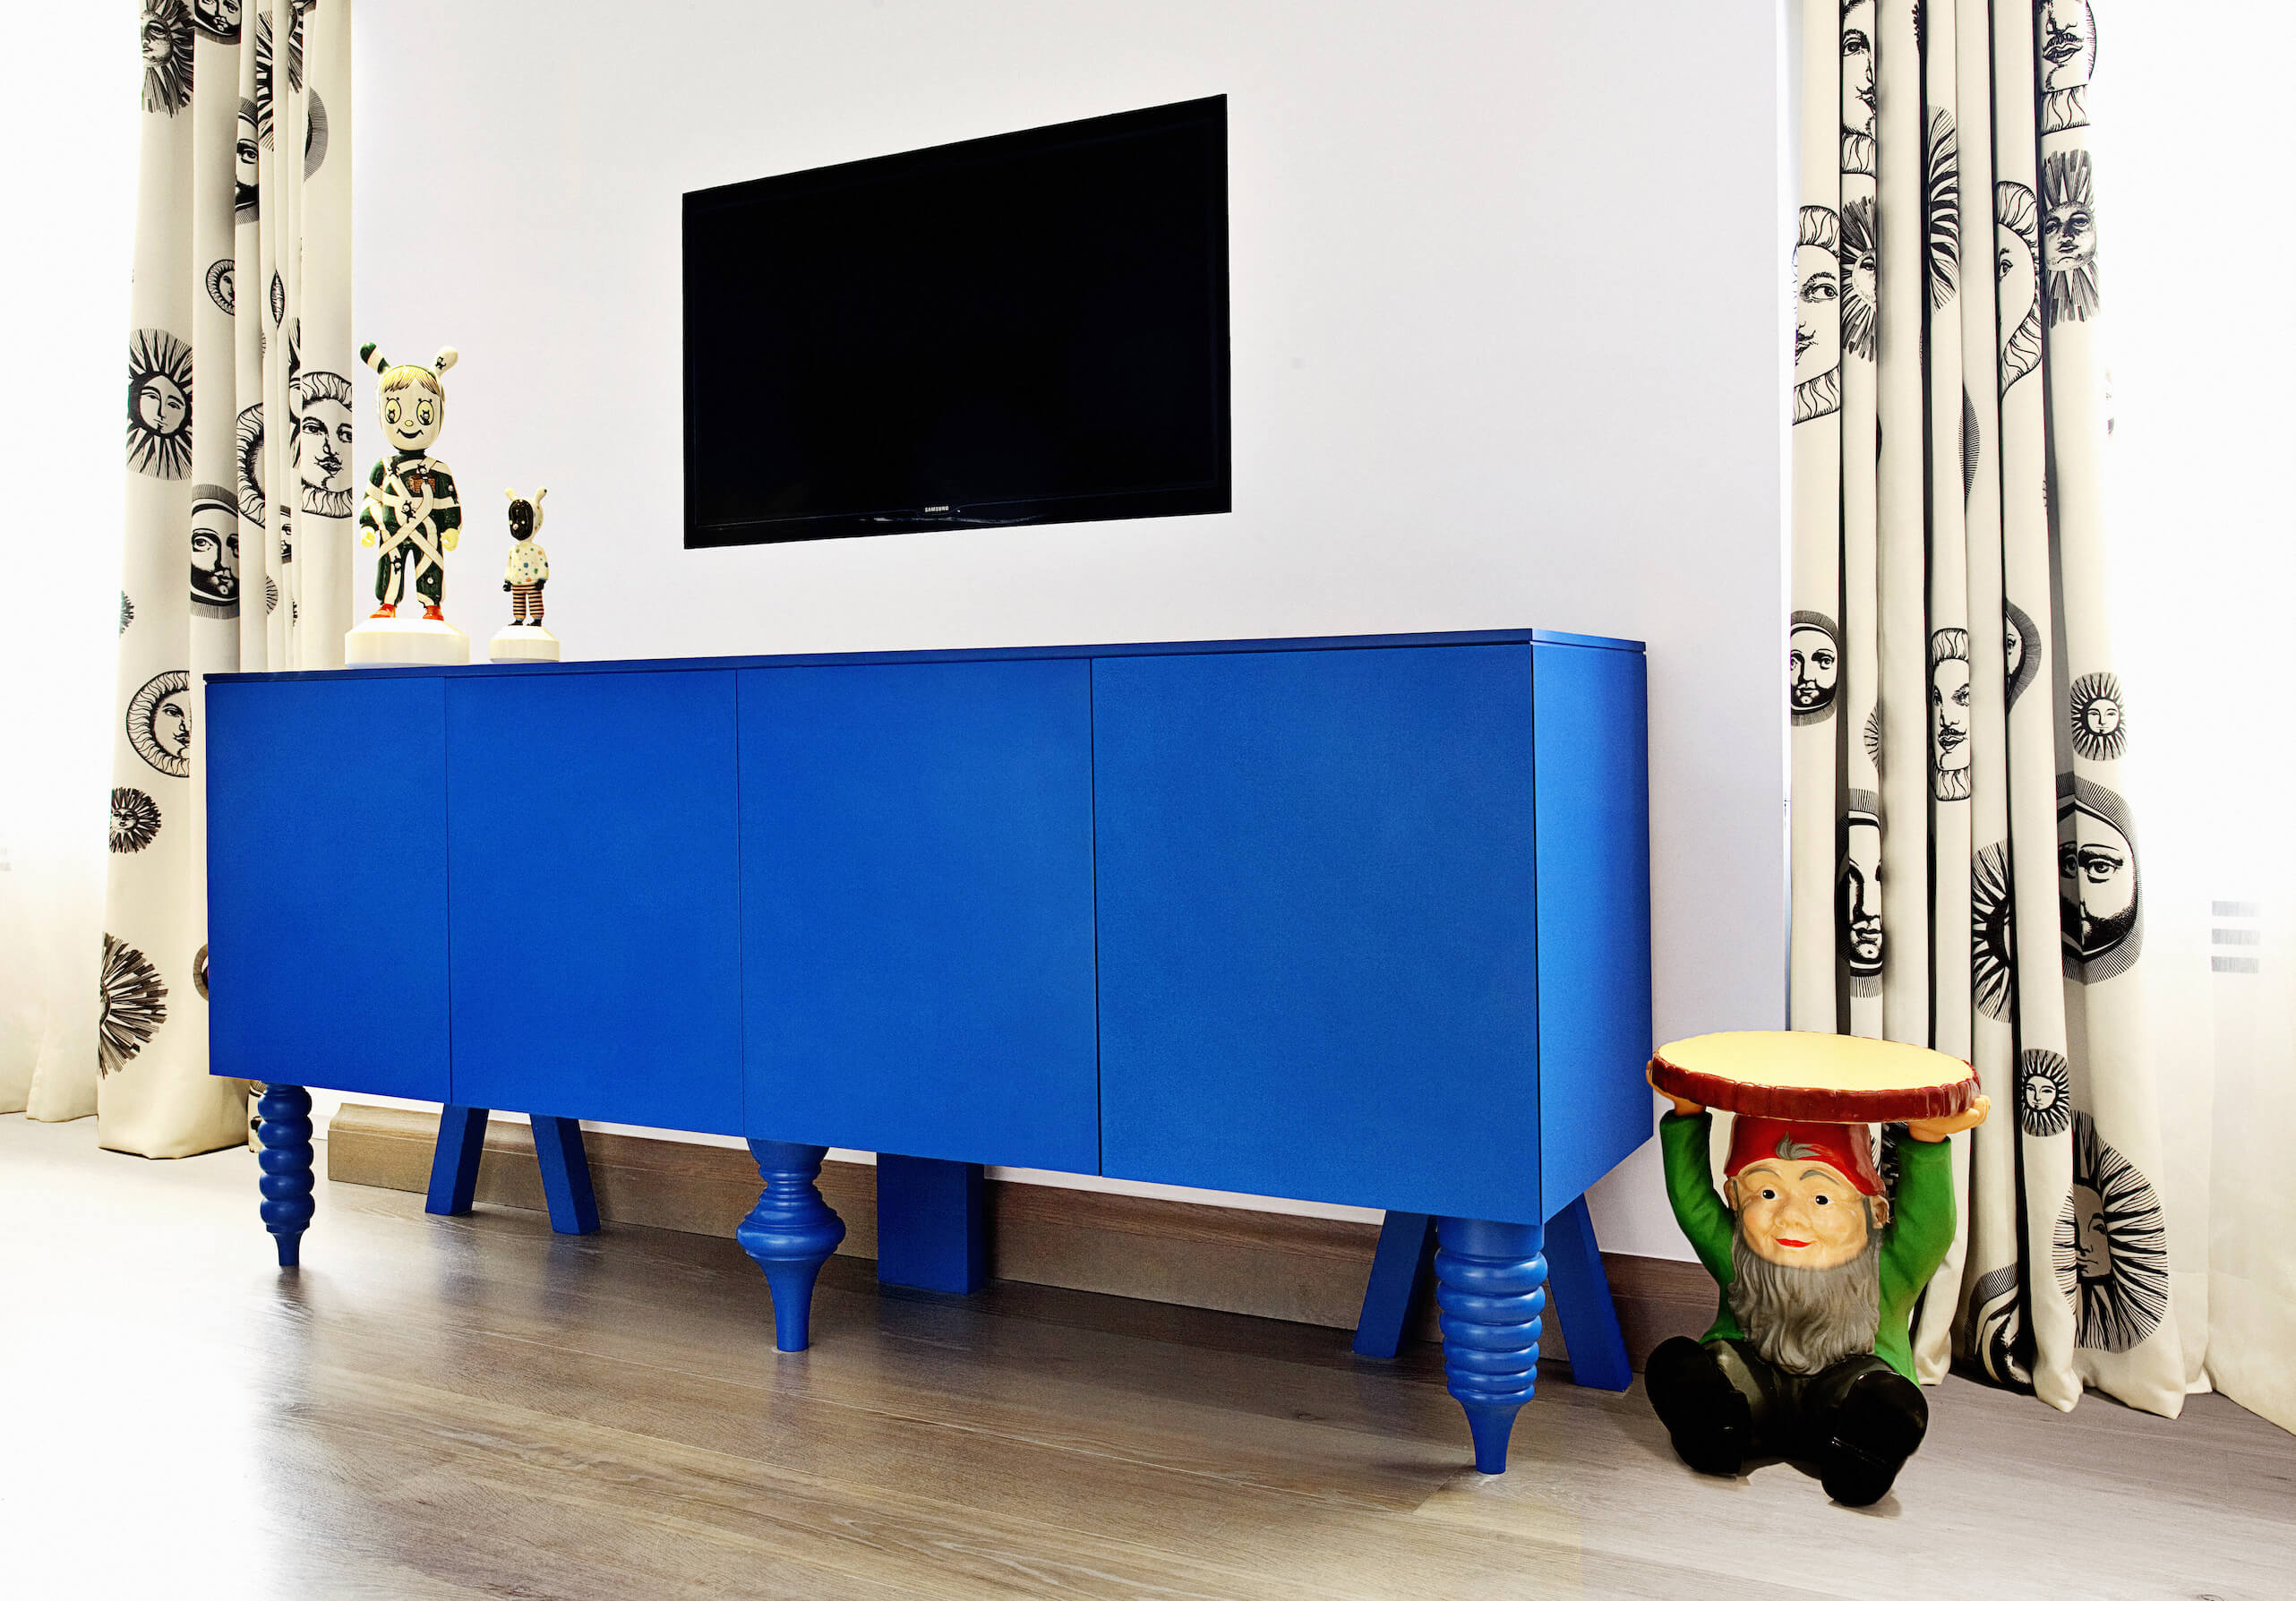 卧室里摆放着另一件大胆的家具;这个亮蓝色的橱柜站在阳光图案的窗帘之间，腿的设置不匹配。壁挂式电视悬挂在空间上方，展示着另一张侏儒桌子和一对小雕像。